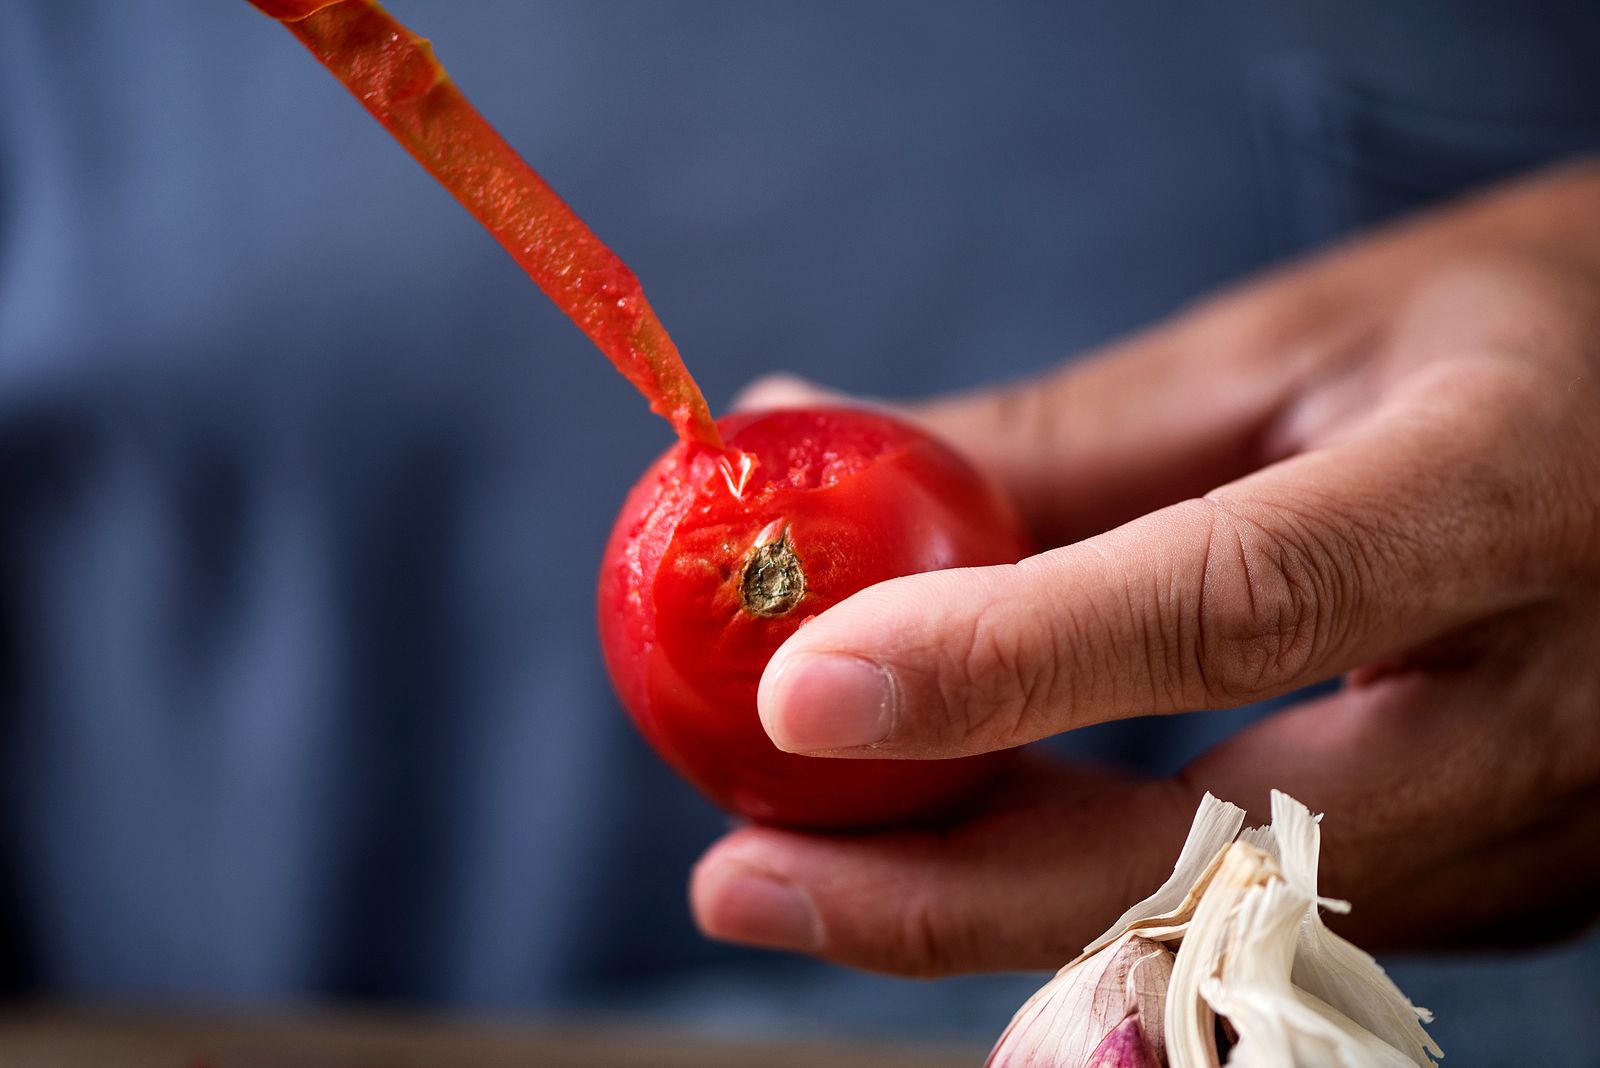 Cómo pelar tomates más rápido: 3 trucos que no fallan Foto: bigstock